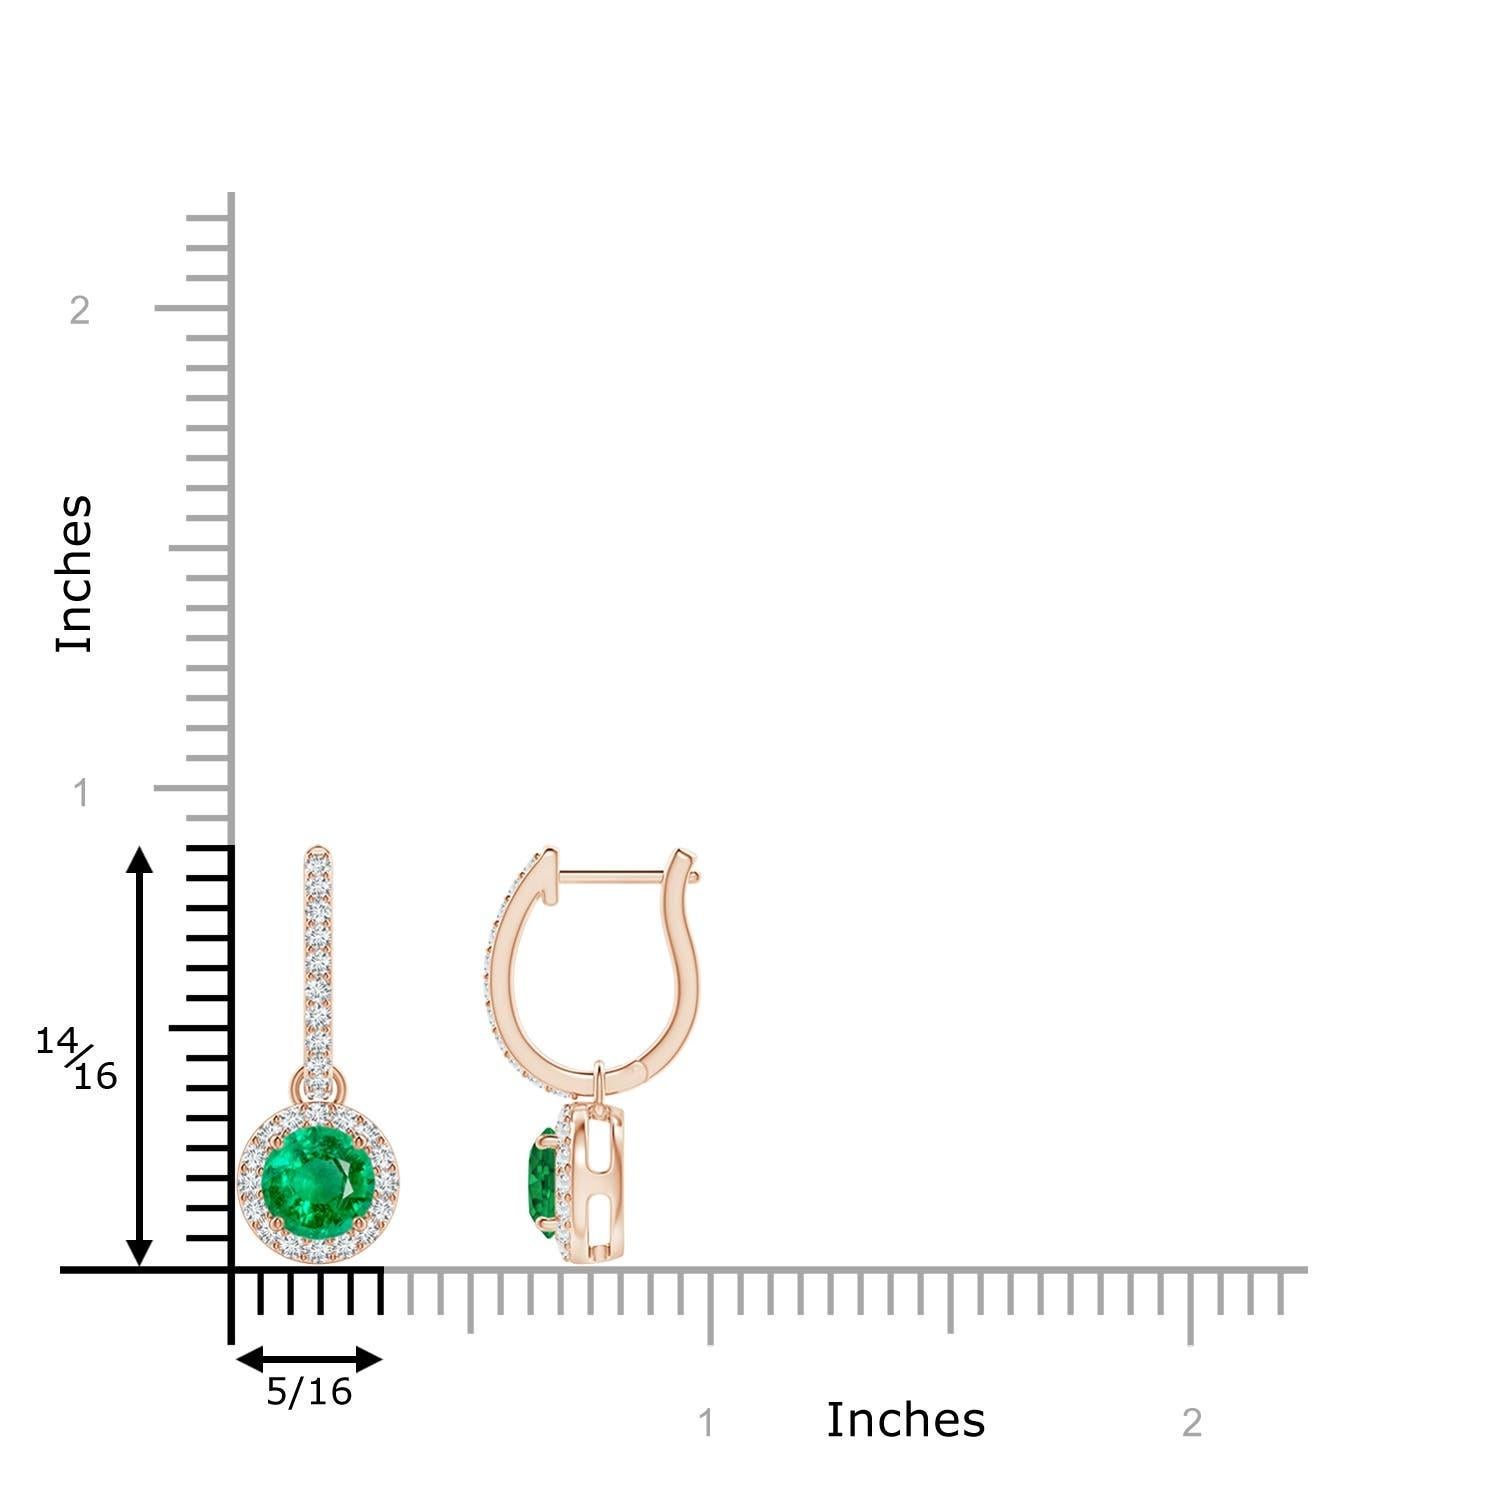 Eingebettet in einen schimmernden Halo aus runden Diamanten sind runde, sattgrüne Smaragde in Zackenfassung. Die diamantenen Akzente auf dem Ring verleihen diesen Smaragd-Ohrringen aus 14 Karat Roségold einen zusätzlichen Hauch von Eleganz.
Der